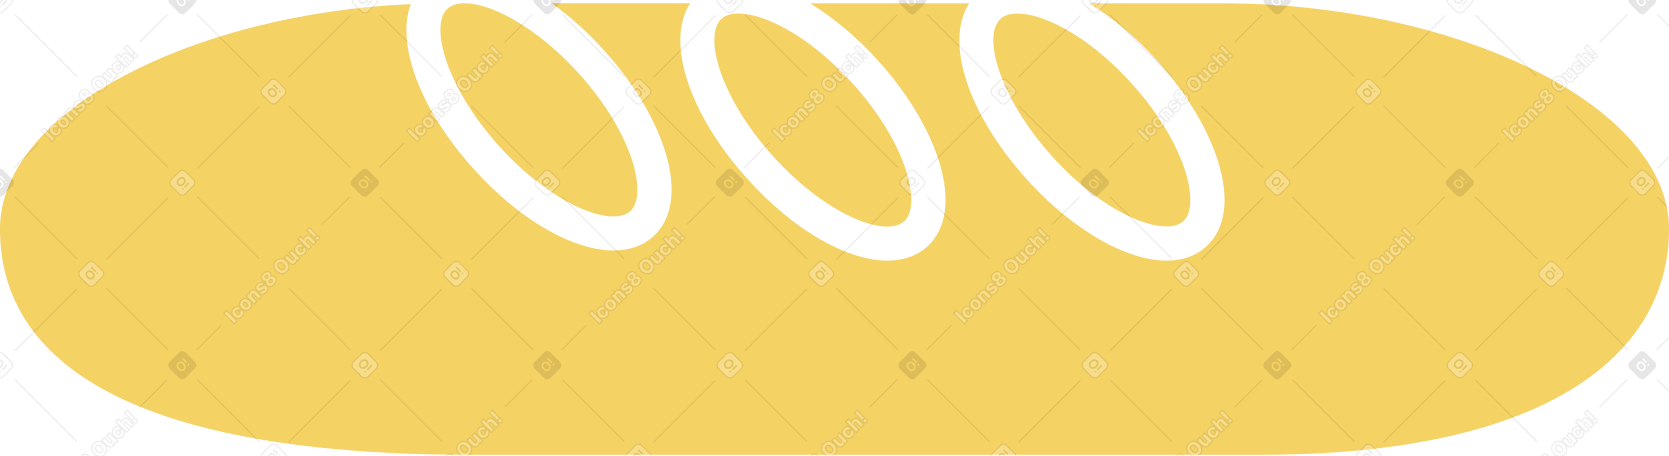 loaf Illustration in PNG, SVG